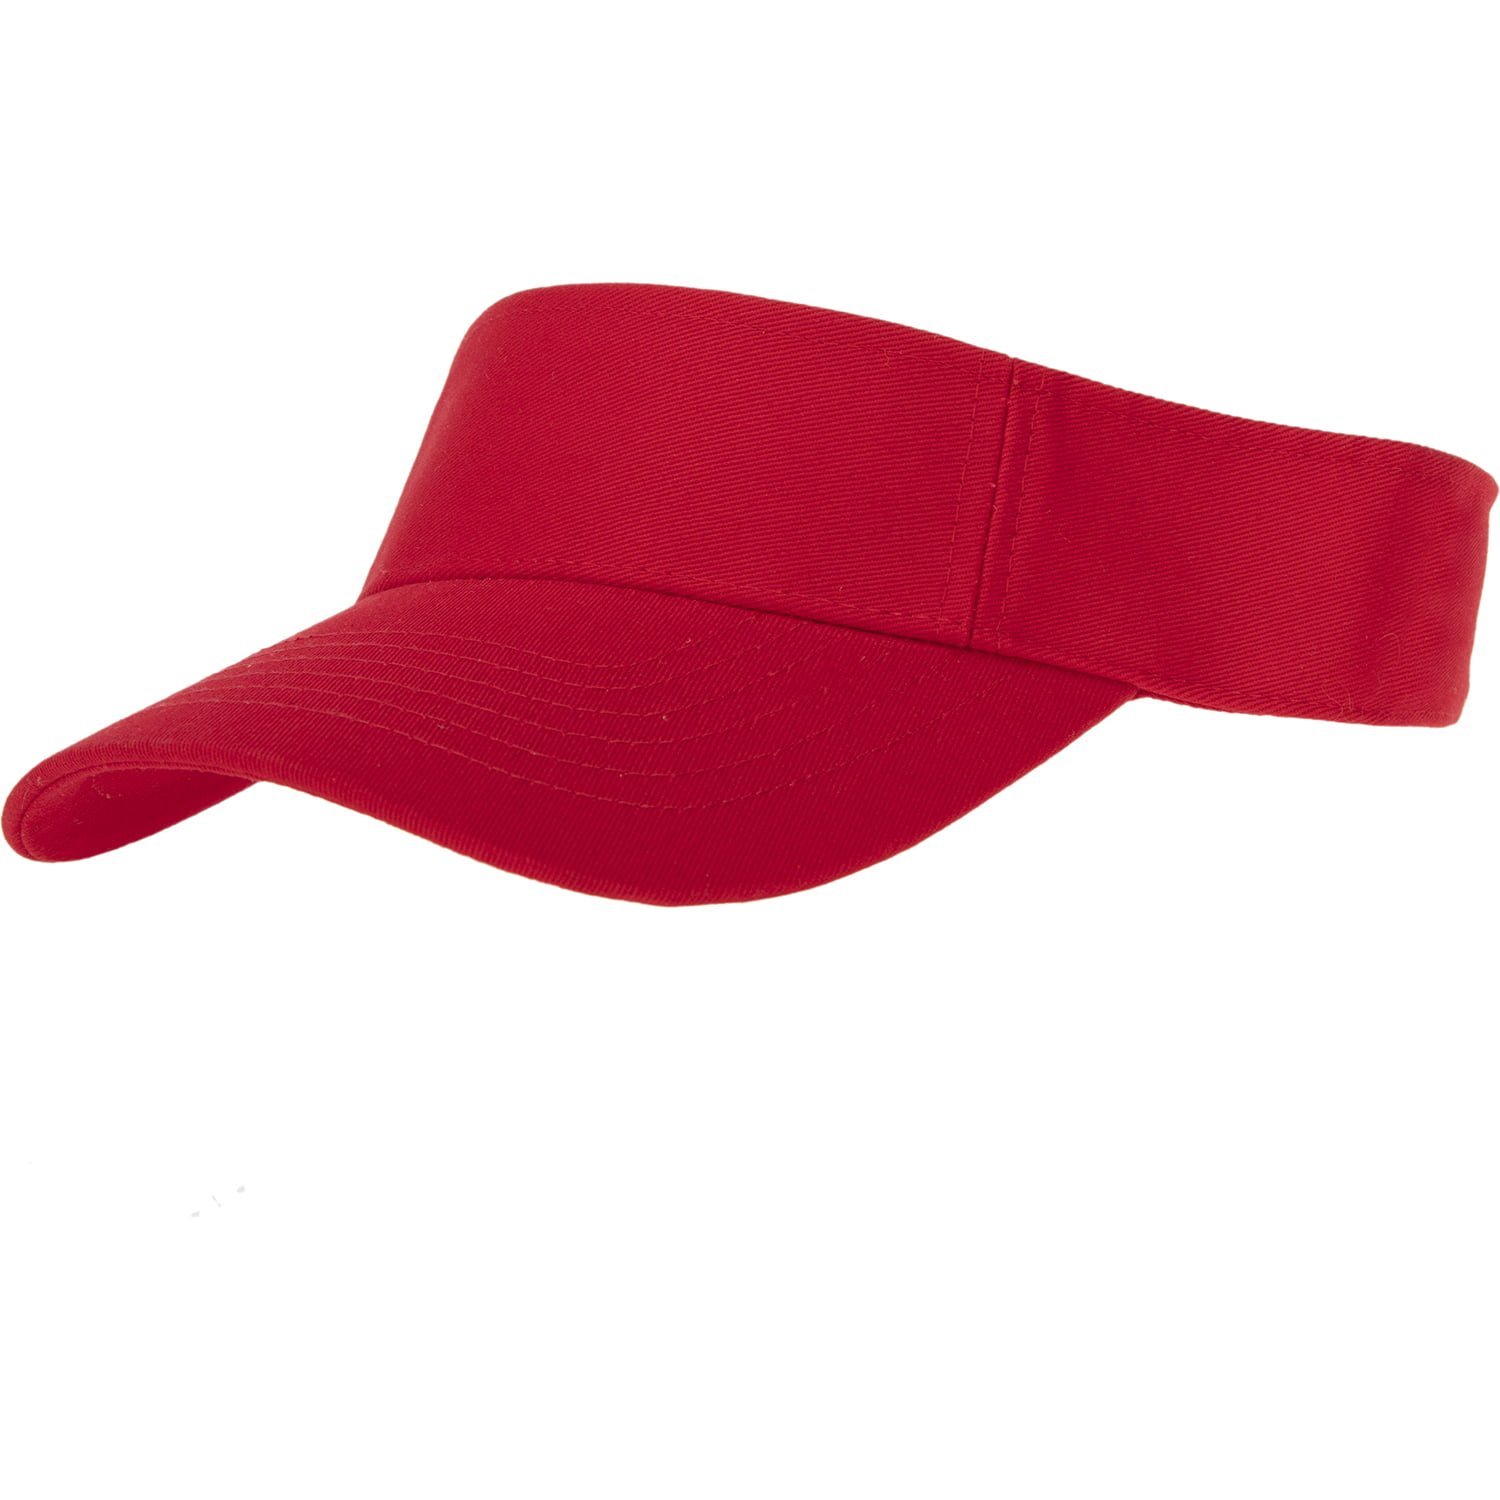 12pcs Red Sun Visor Hat - Dozen Packed